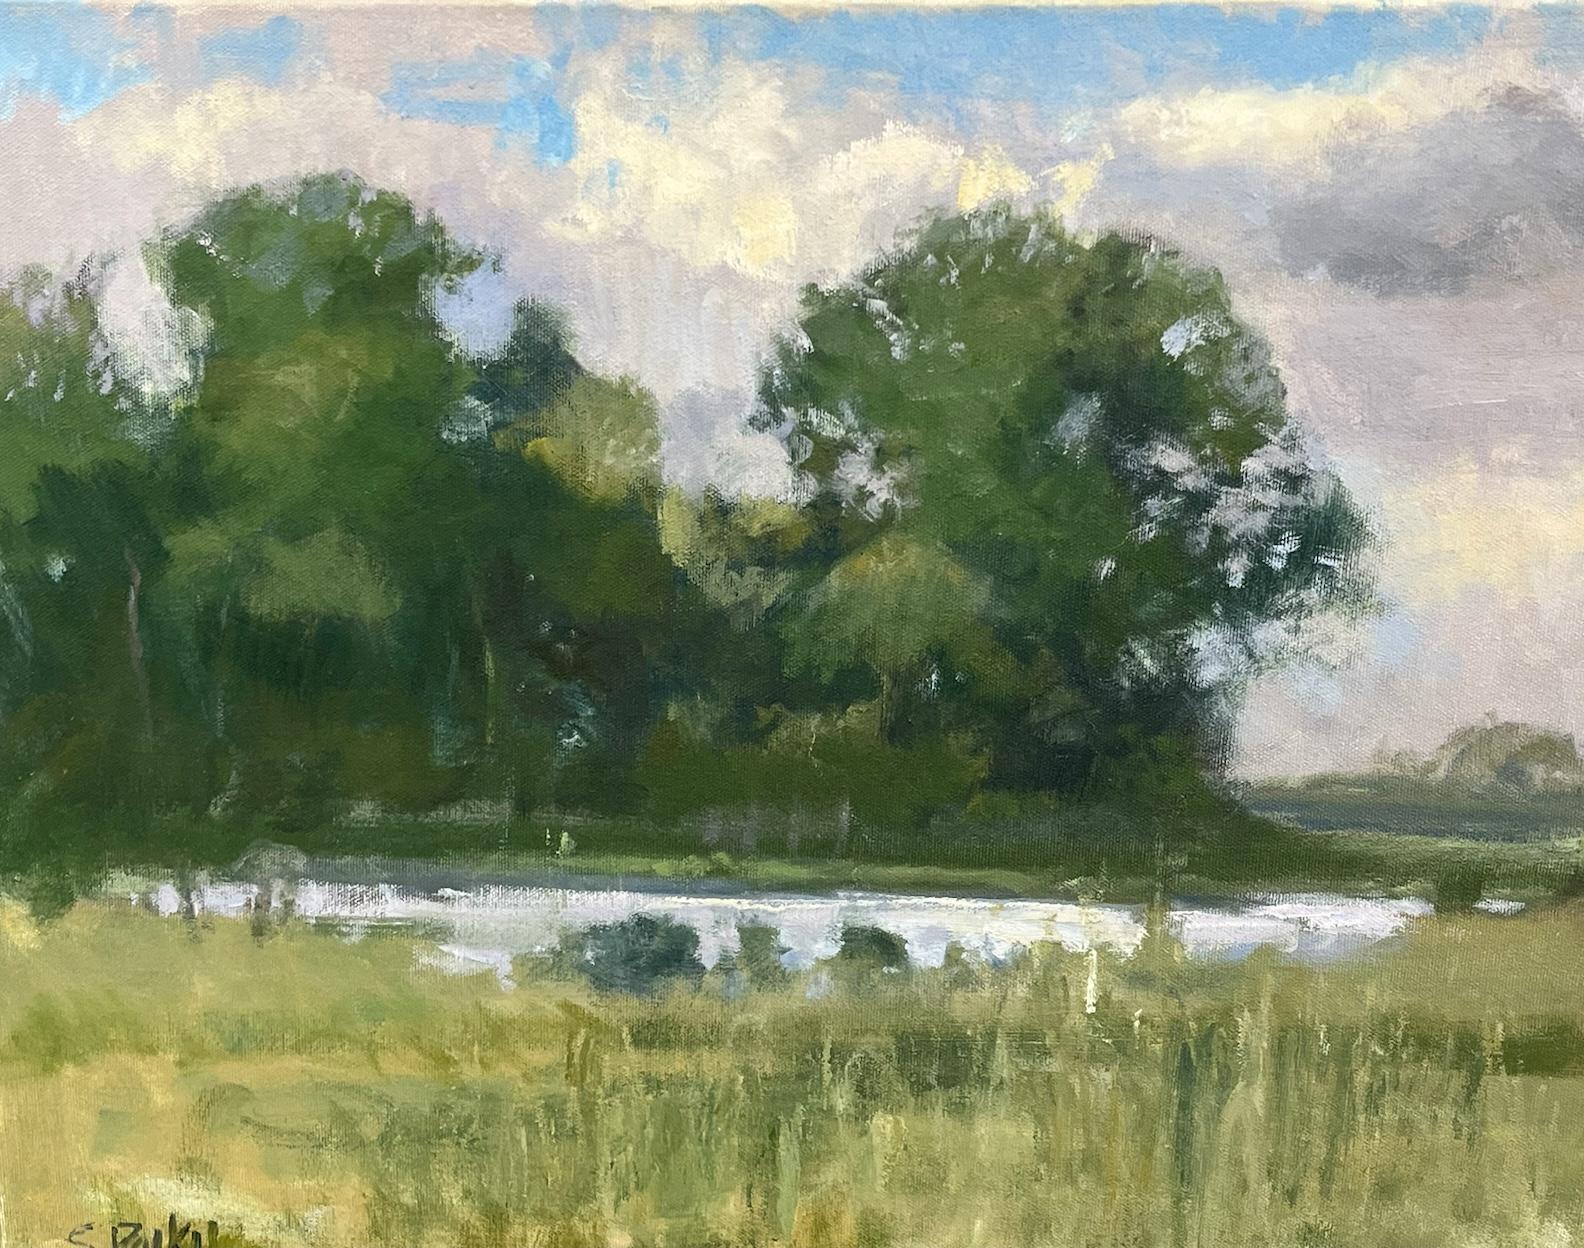 Landscape Painting Steve Parker - George Ranch Trees Texas Landscape Huile Impressionnisme américain  La lumière et l'ombre 